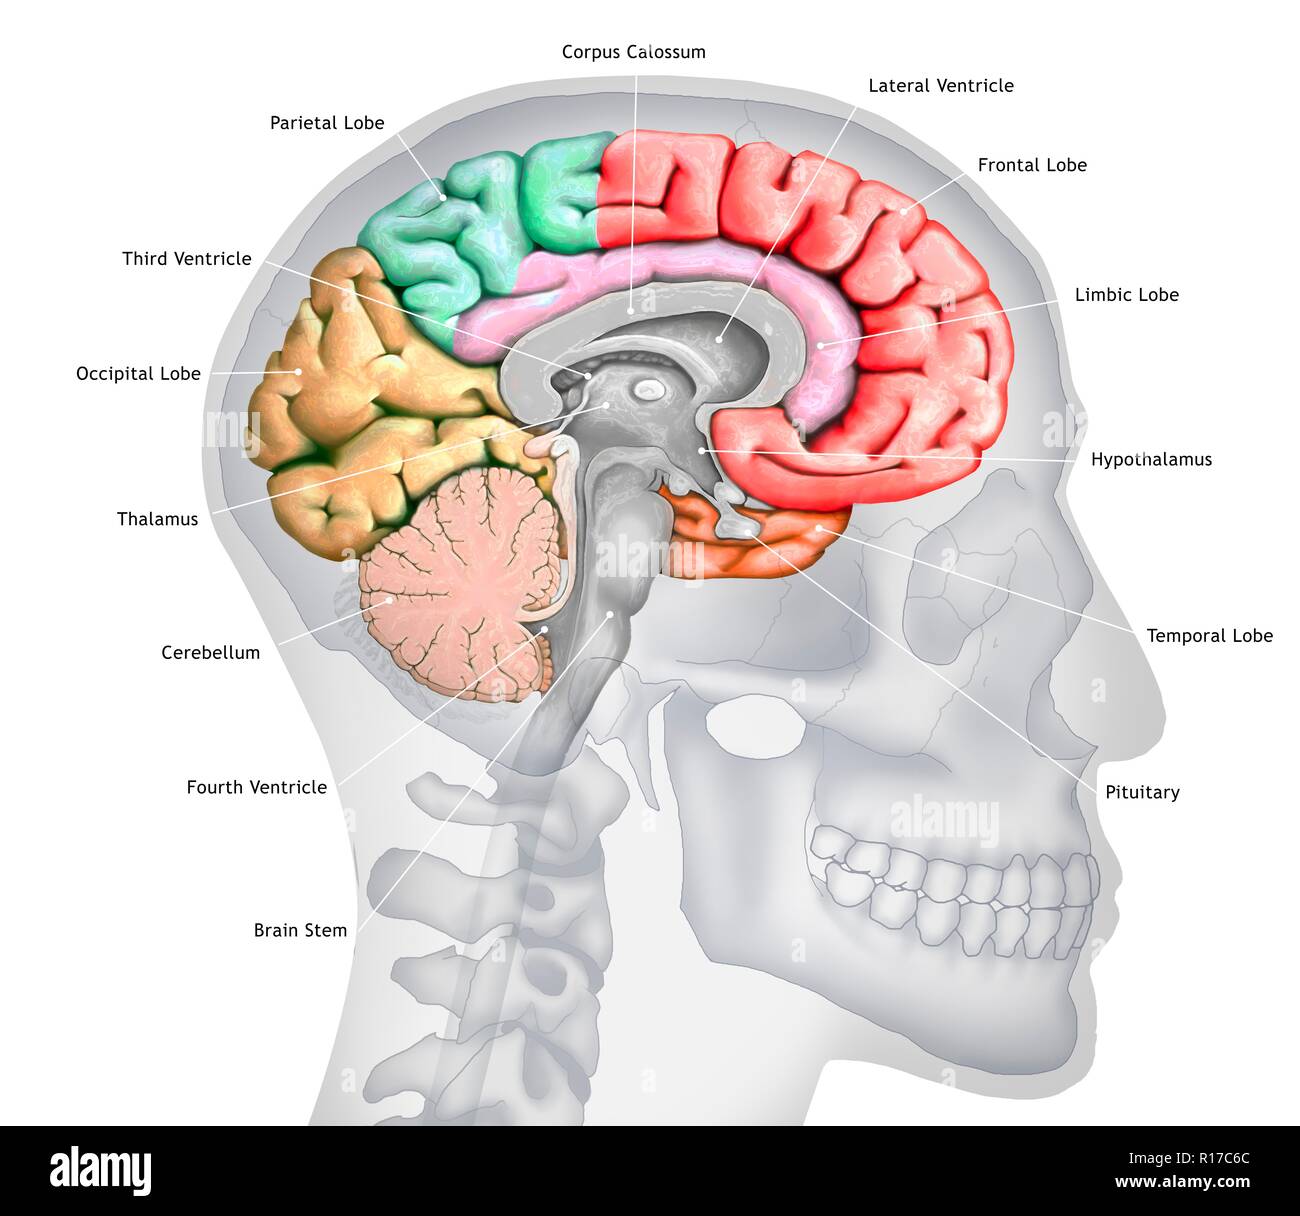 Abbildung: einen Querschnitt des Gehirns zeigt die verschiedenen Nocken. Die Nocken sind in verschiedenen Farben - rot (frontal), Grün (PARIETAL), Gelb (Okzipitalen), Orange (zeitliche) gezeigt, und Rosa (limbic). Ebenfalls dargestellt sind die verschiedenen Ventrikel, der Hirnstamm, thalamus und Hypothalamus, das Kleinhirn, die Hypophyse und den Corpus callosum. Der Hintergrund zeigt die Silhouette eines menschlichen Schädel und Kopf. Stockfoto